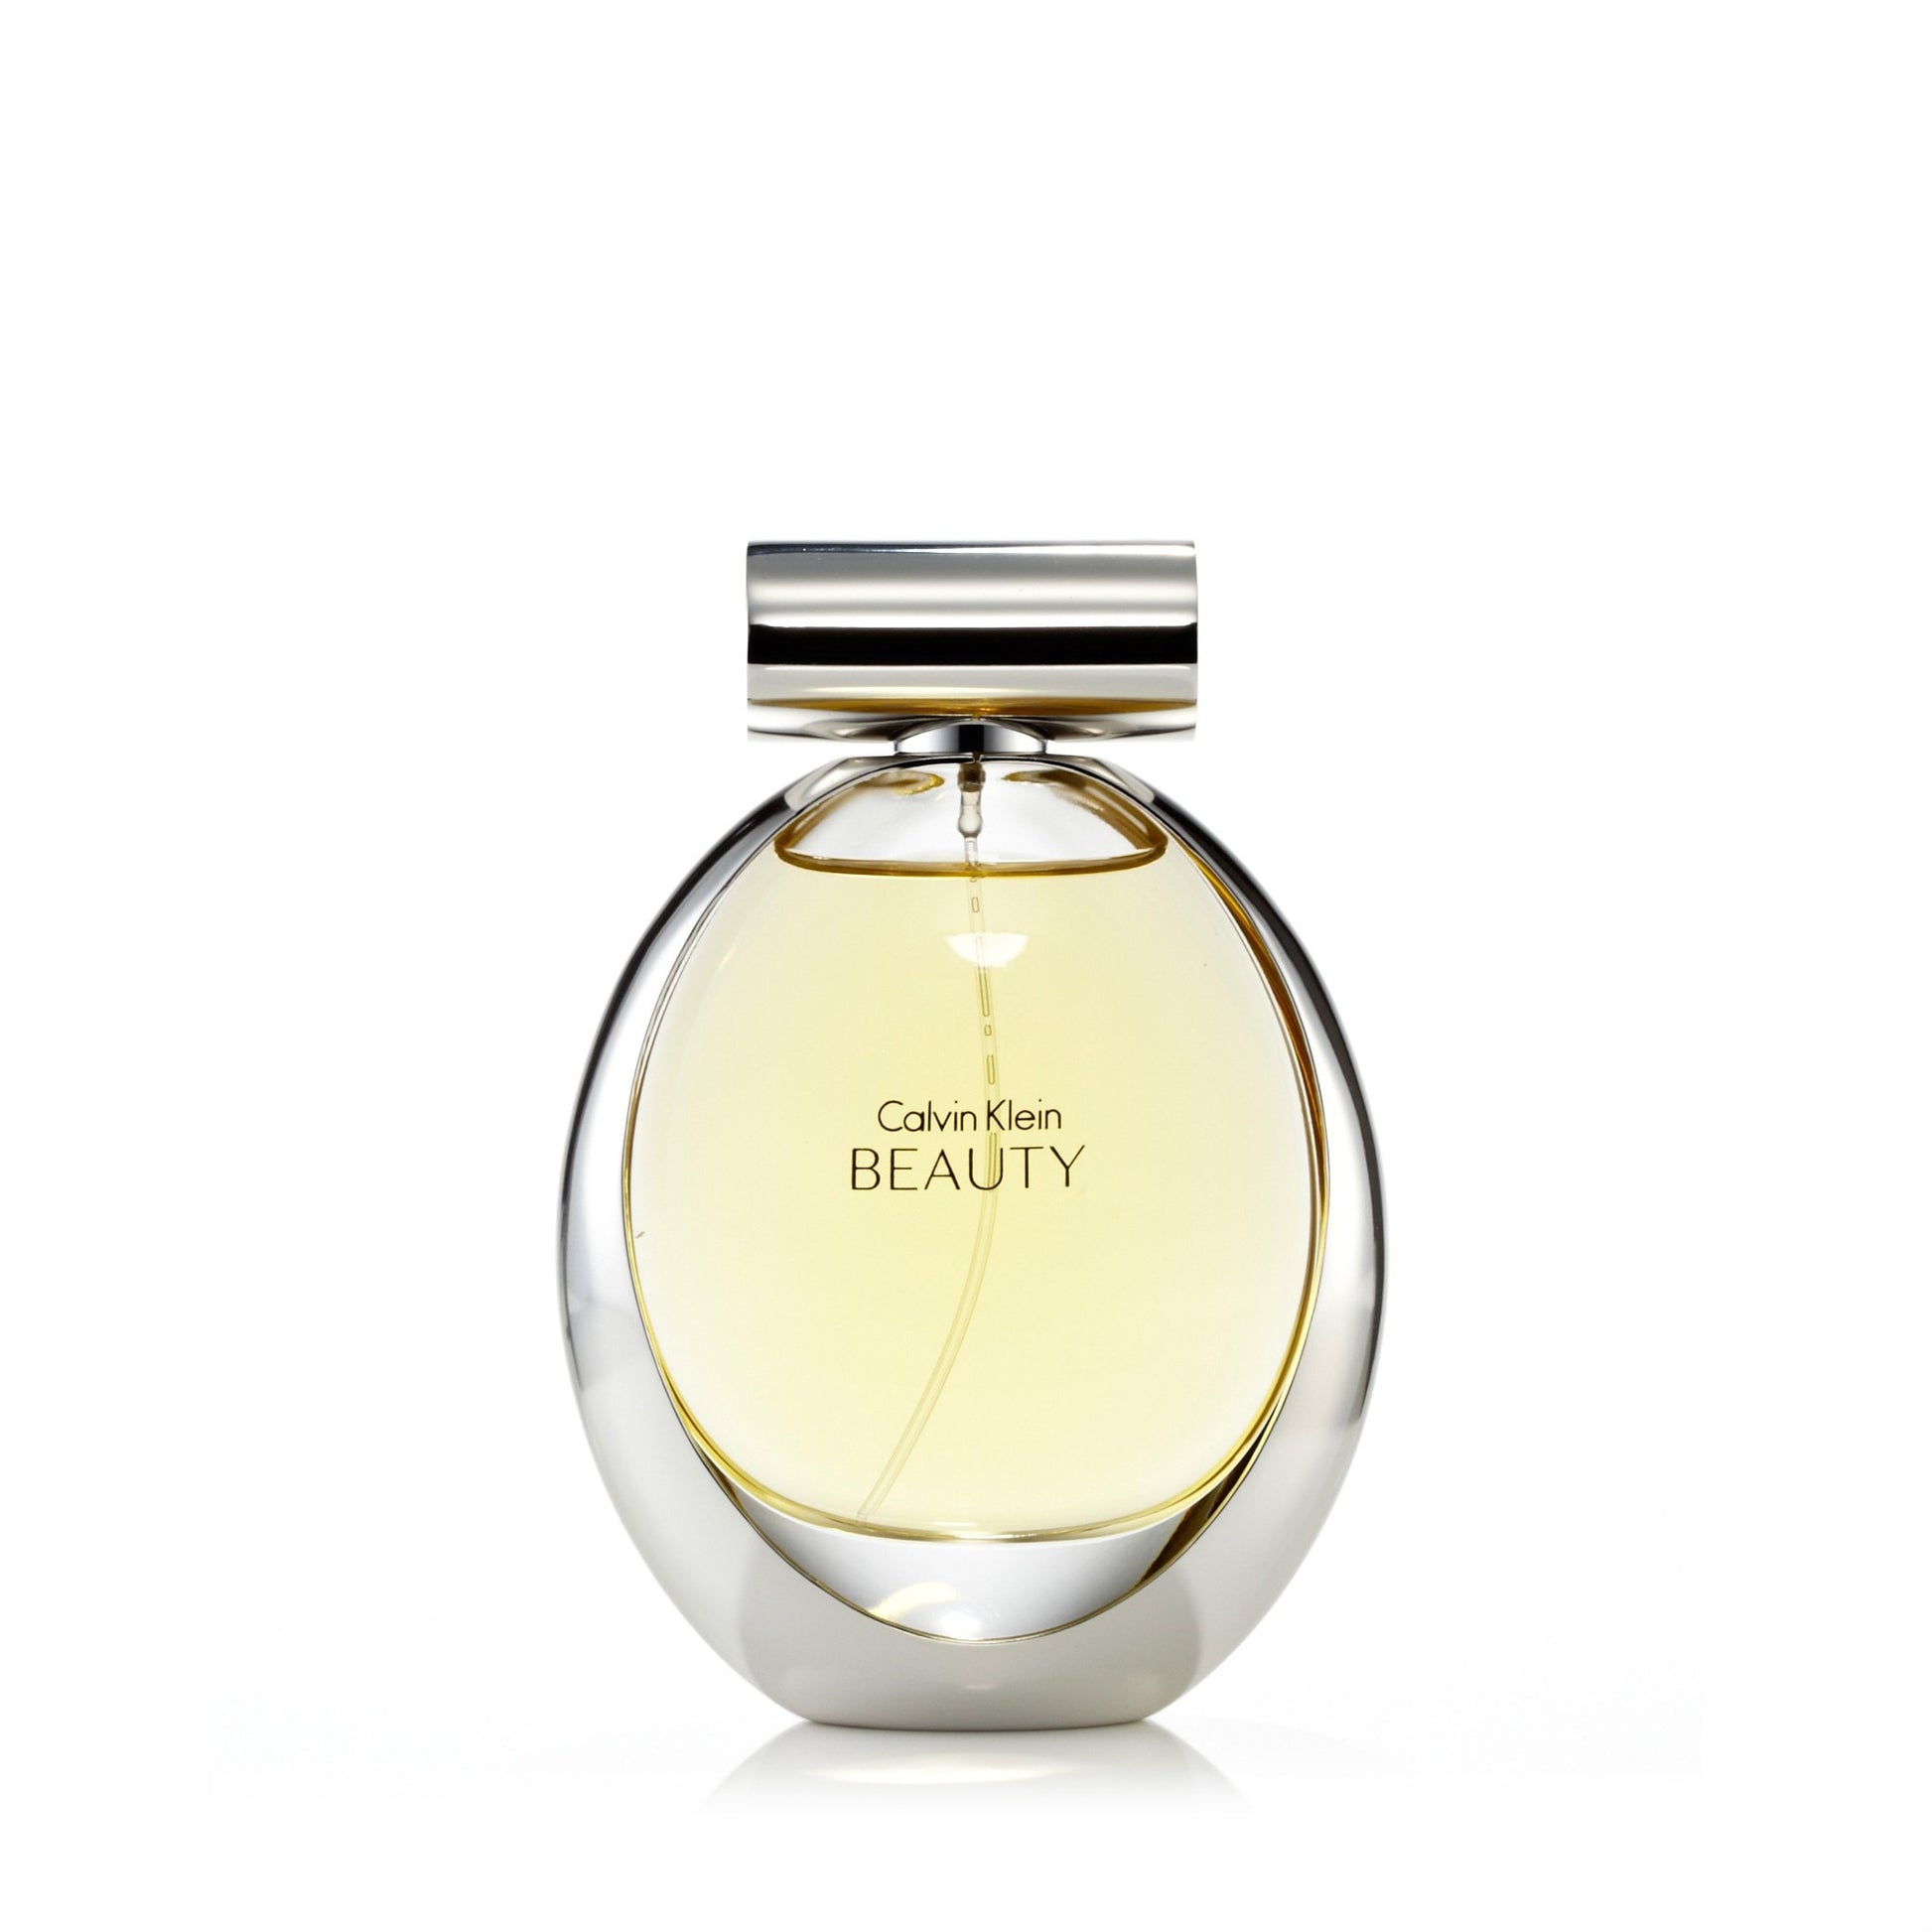 Beauty Eau de Parfum Spray for Women by Calvin Klein 3.4 oz. Click to open in modal